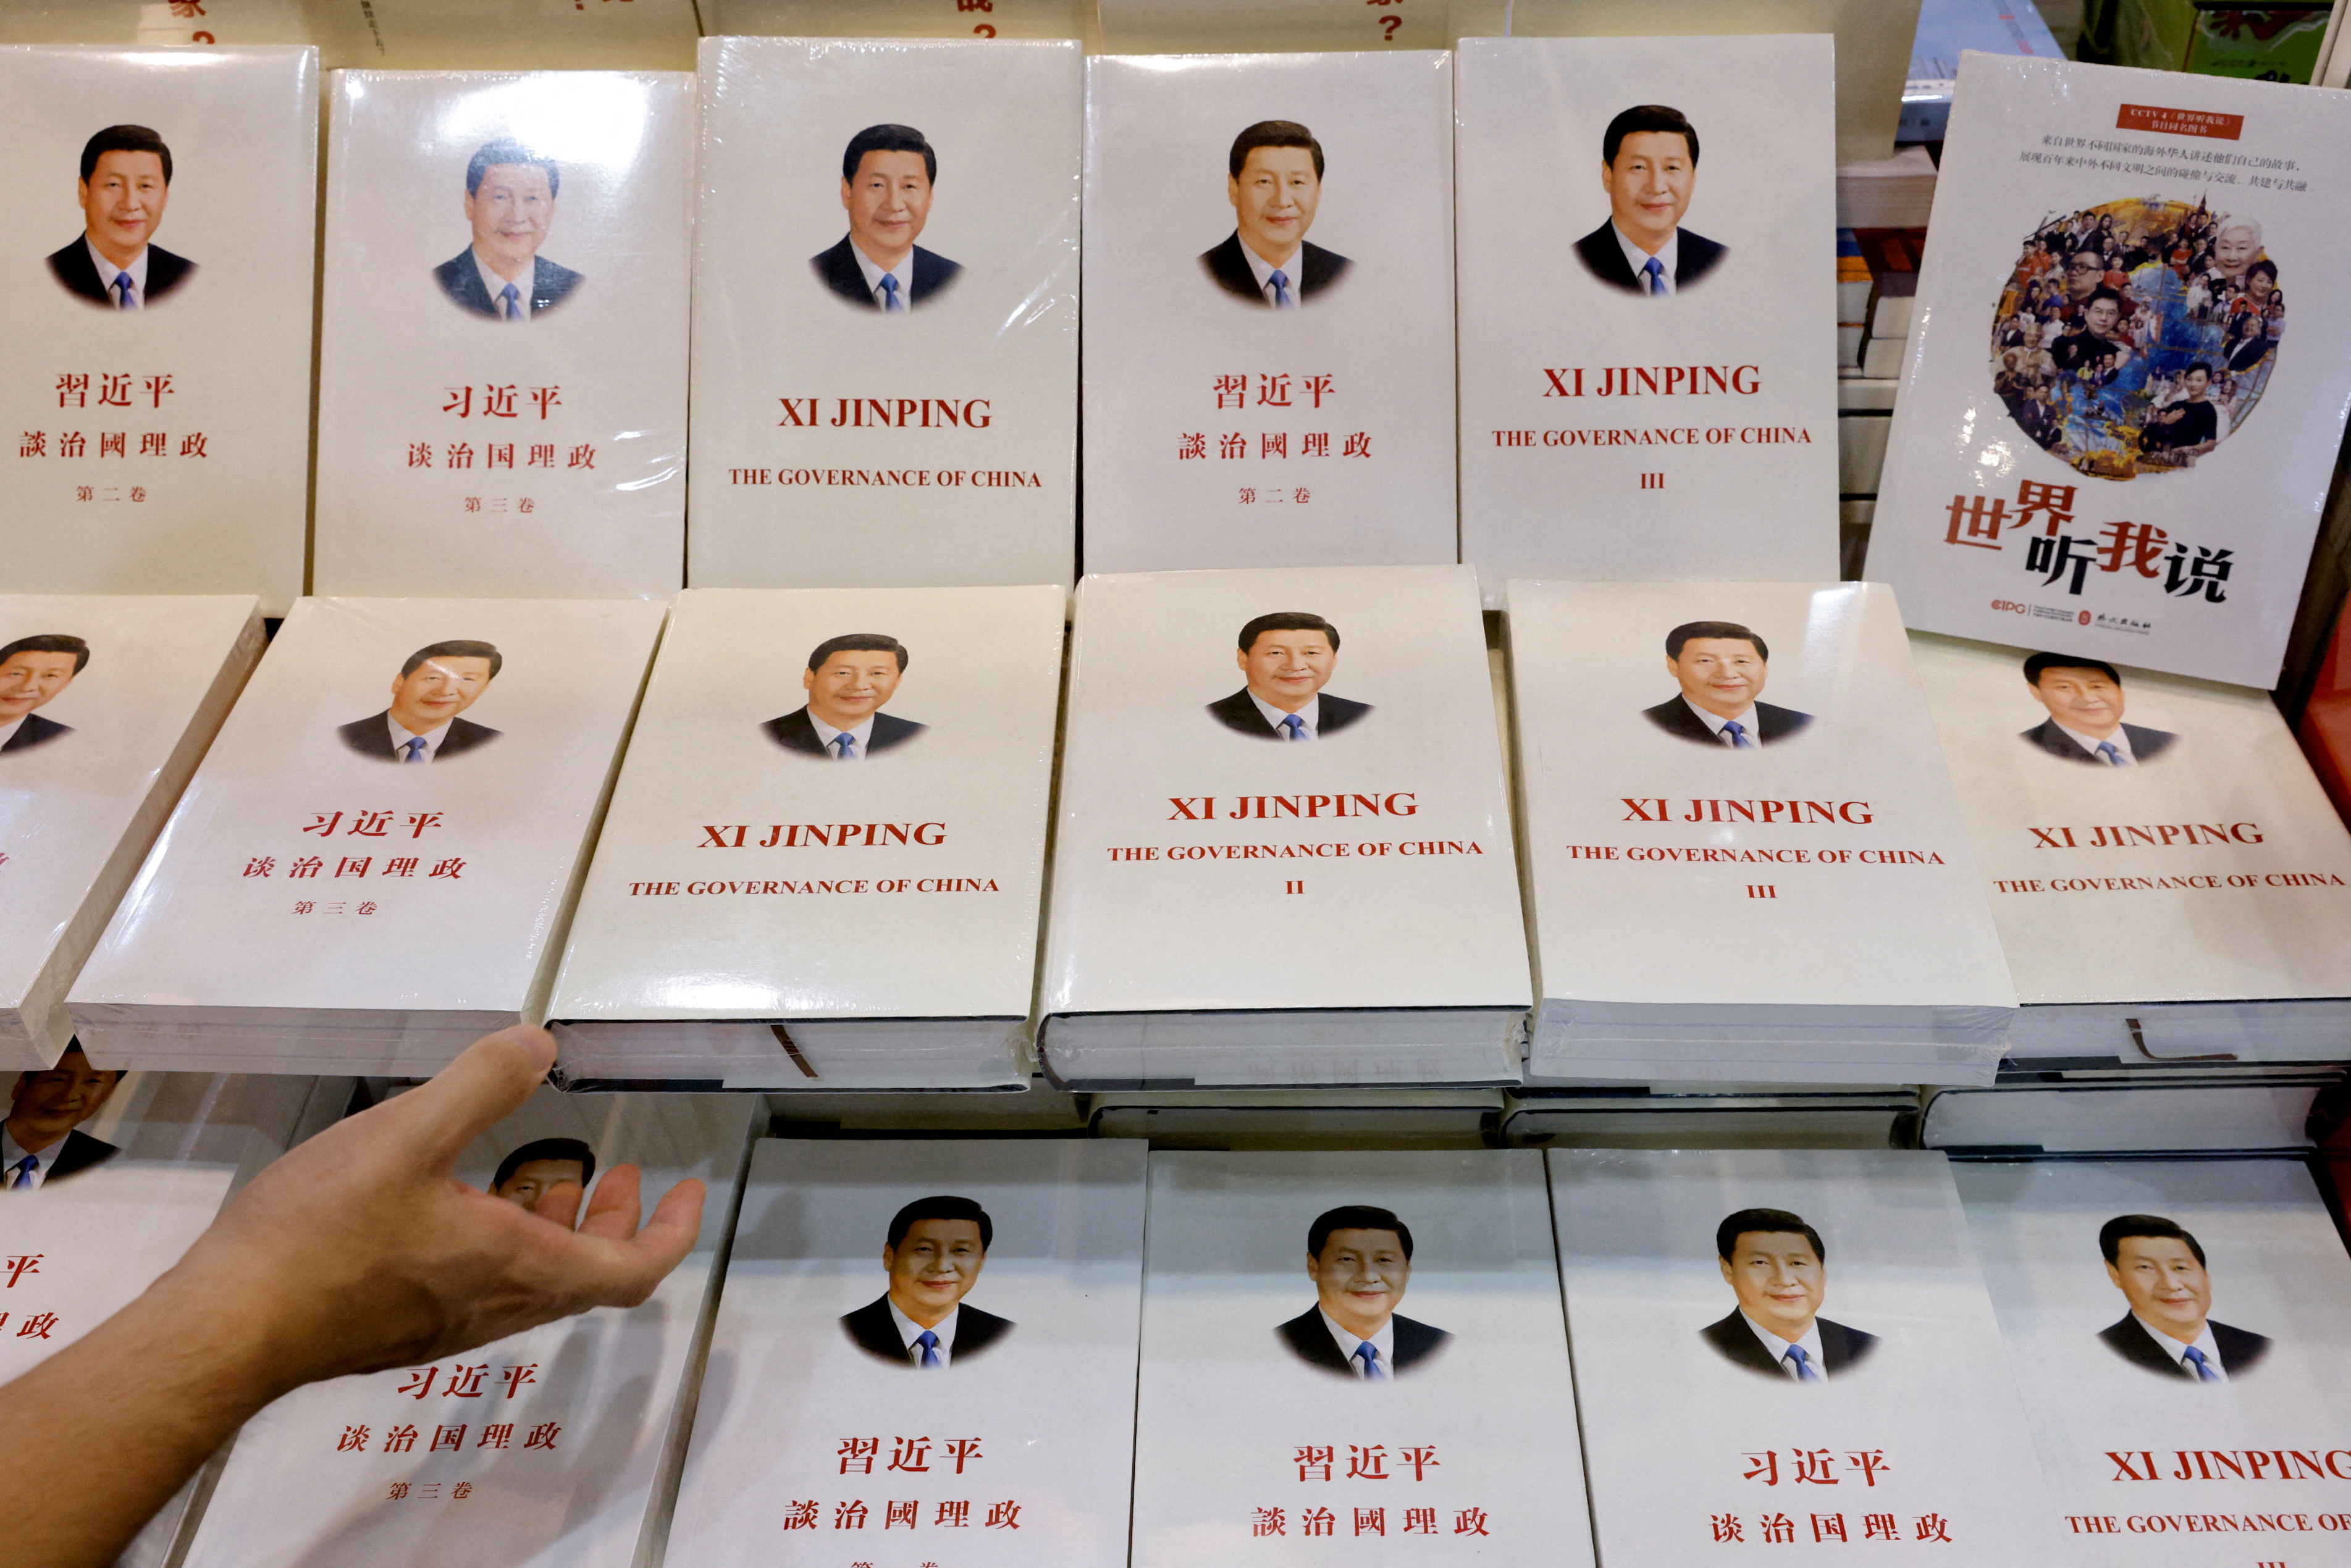 Cópias do livro "Xi Jinping: The Governance of China" são exibidas na Feira do Livro de Hong Kong, em Hong Kong, China, em 14 de julho de 2021. REUTERS / Tyrone Siu / Foto de arquivo